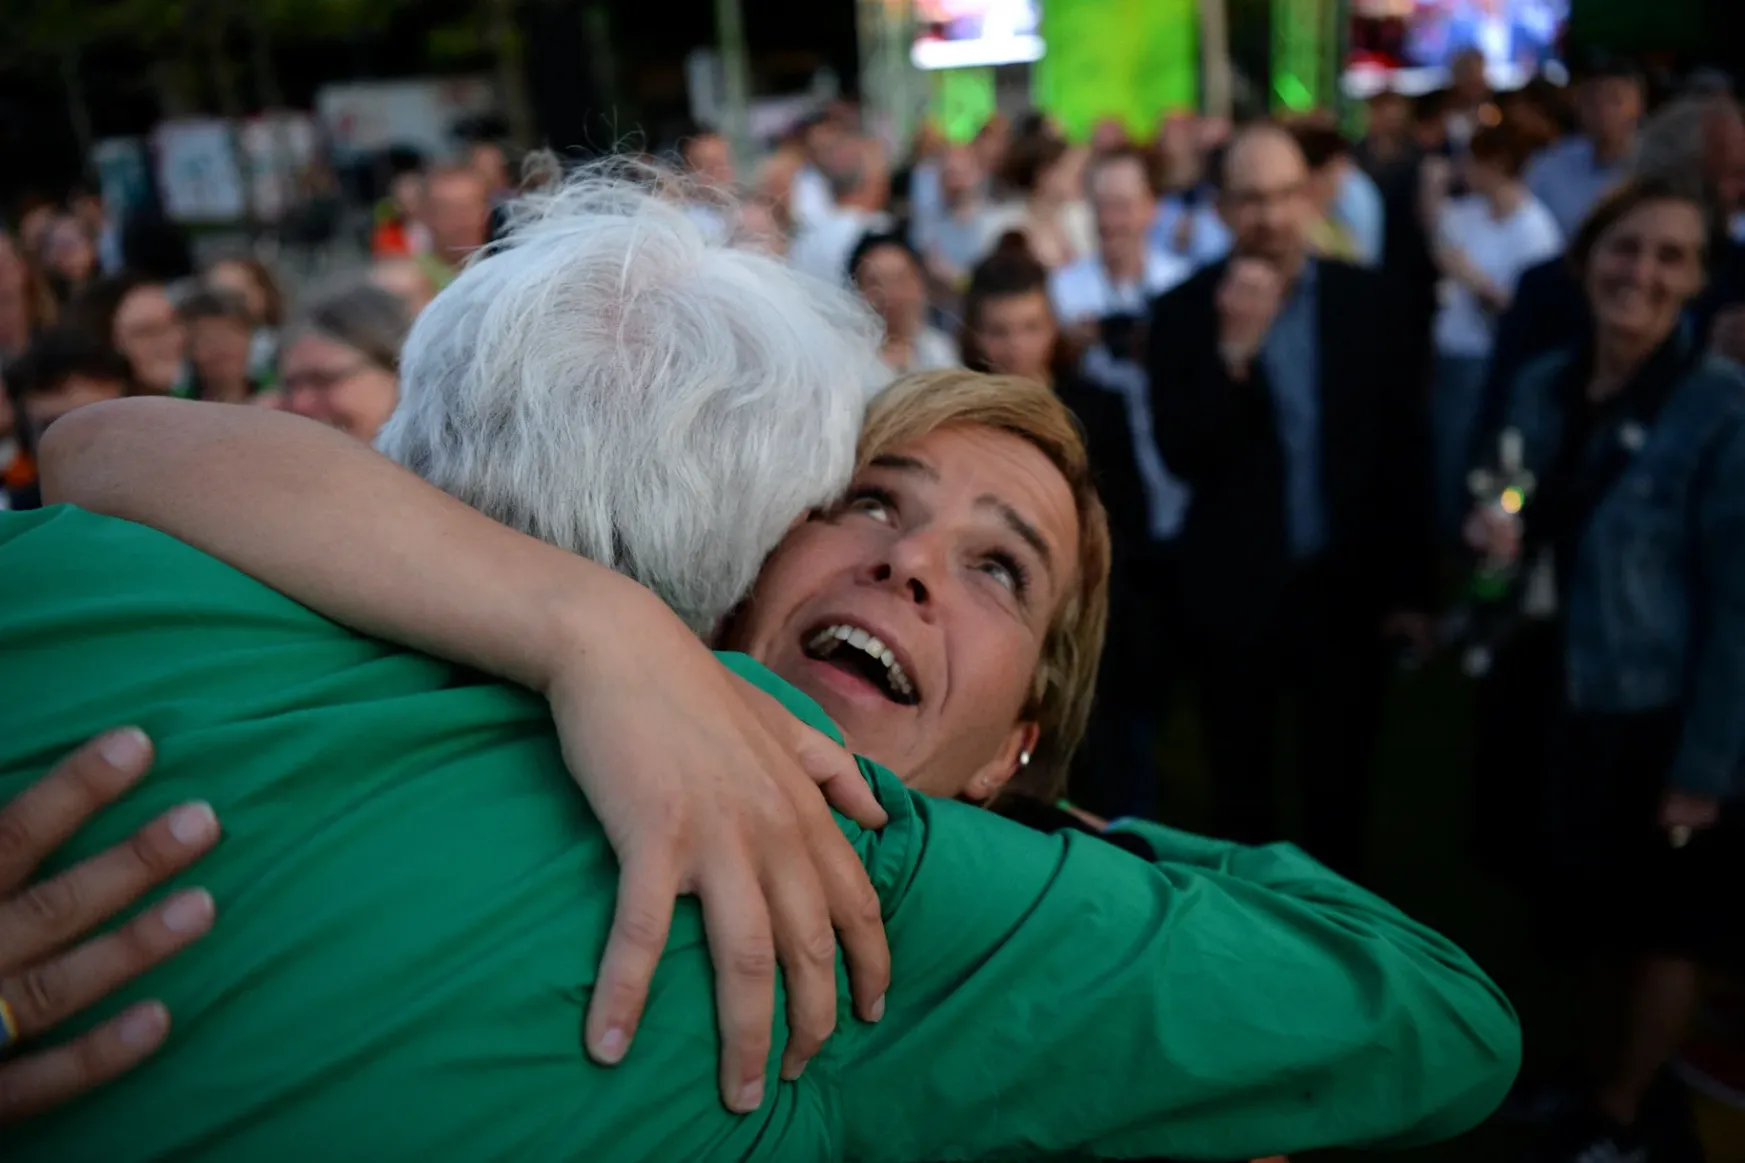 A CDU nyert a legnépesebb német tartomány választásán, de a Zöldek lehetnek a legboldogabbak